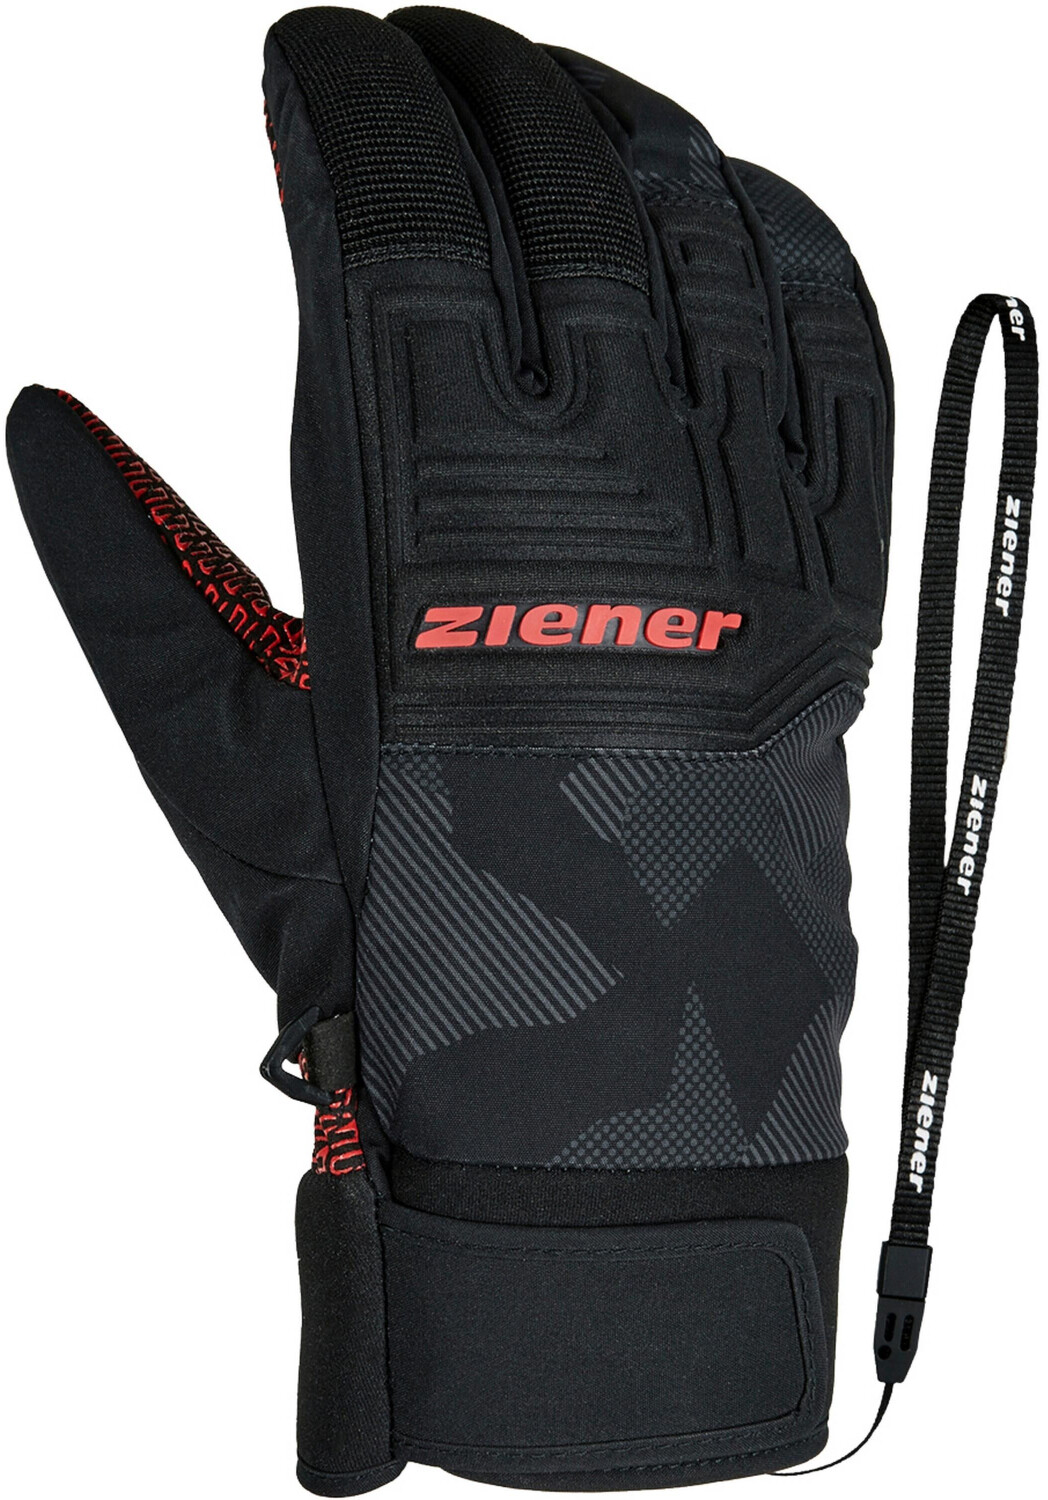 Ziener Garim AS Glove Ski Alpine gray ink camo ab € 9,00 | Preisvergleich  bei